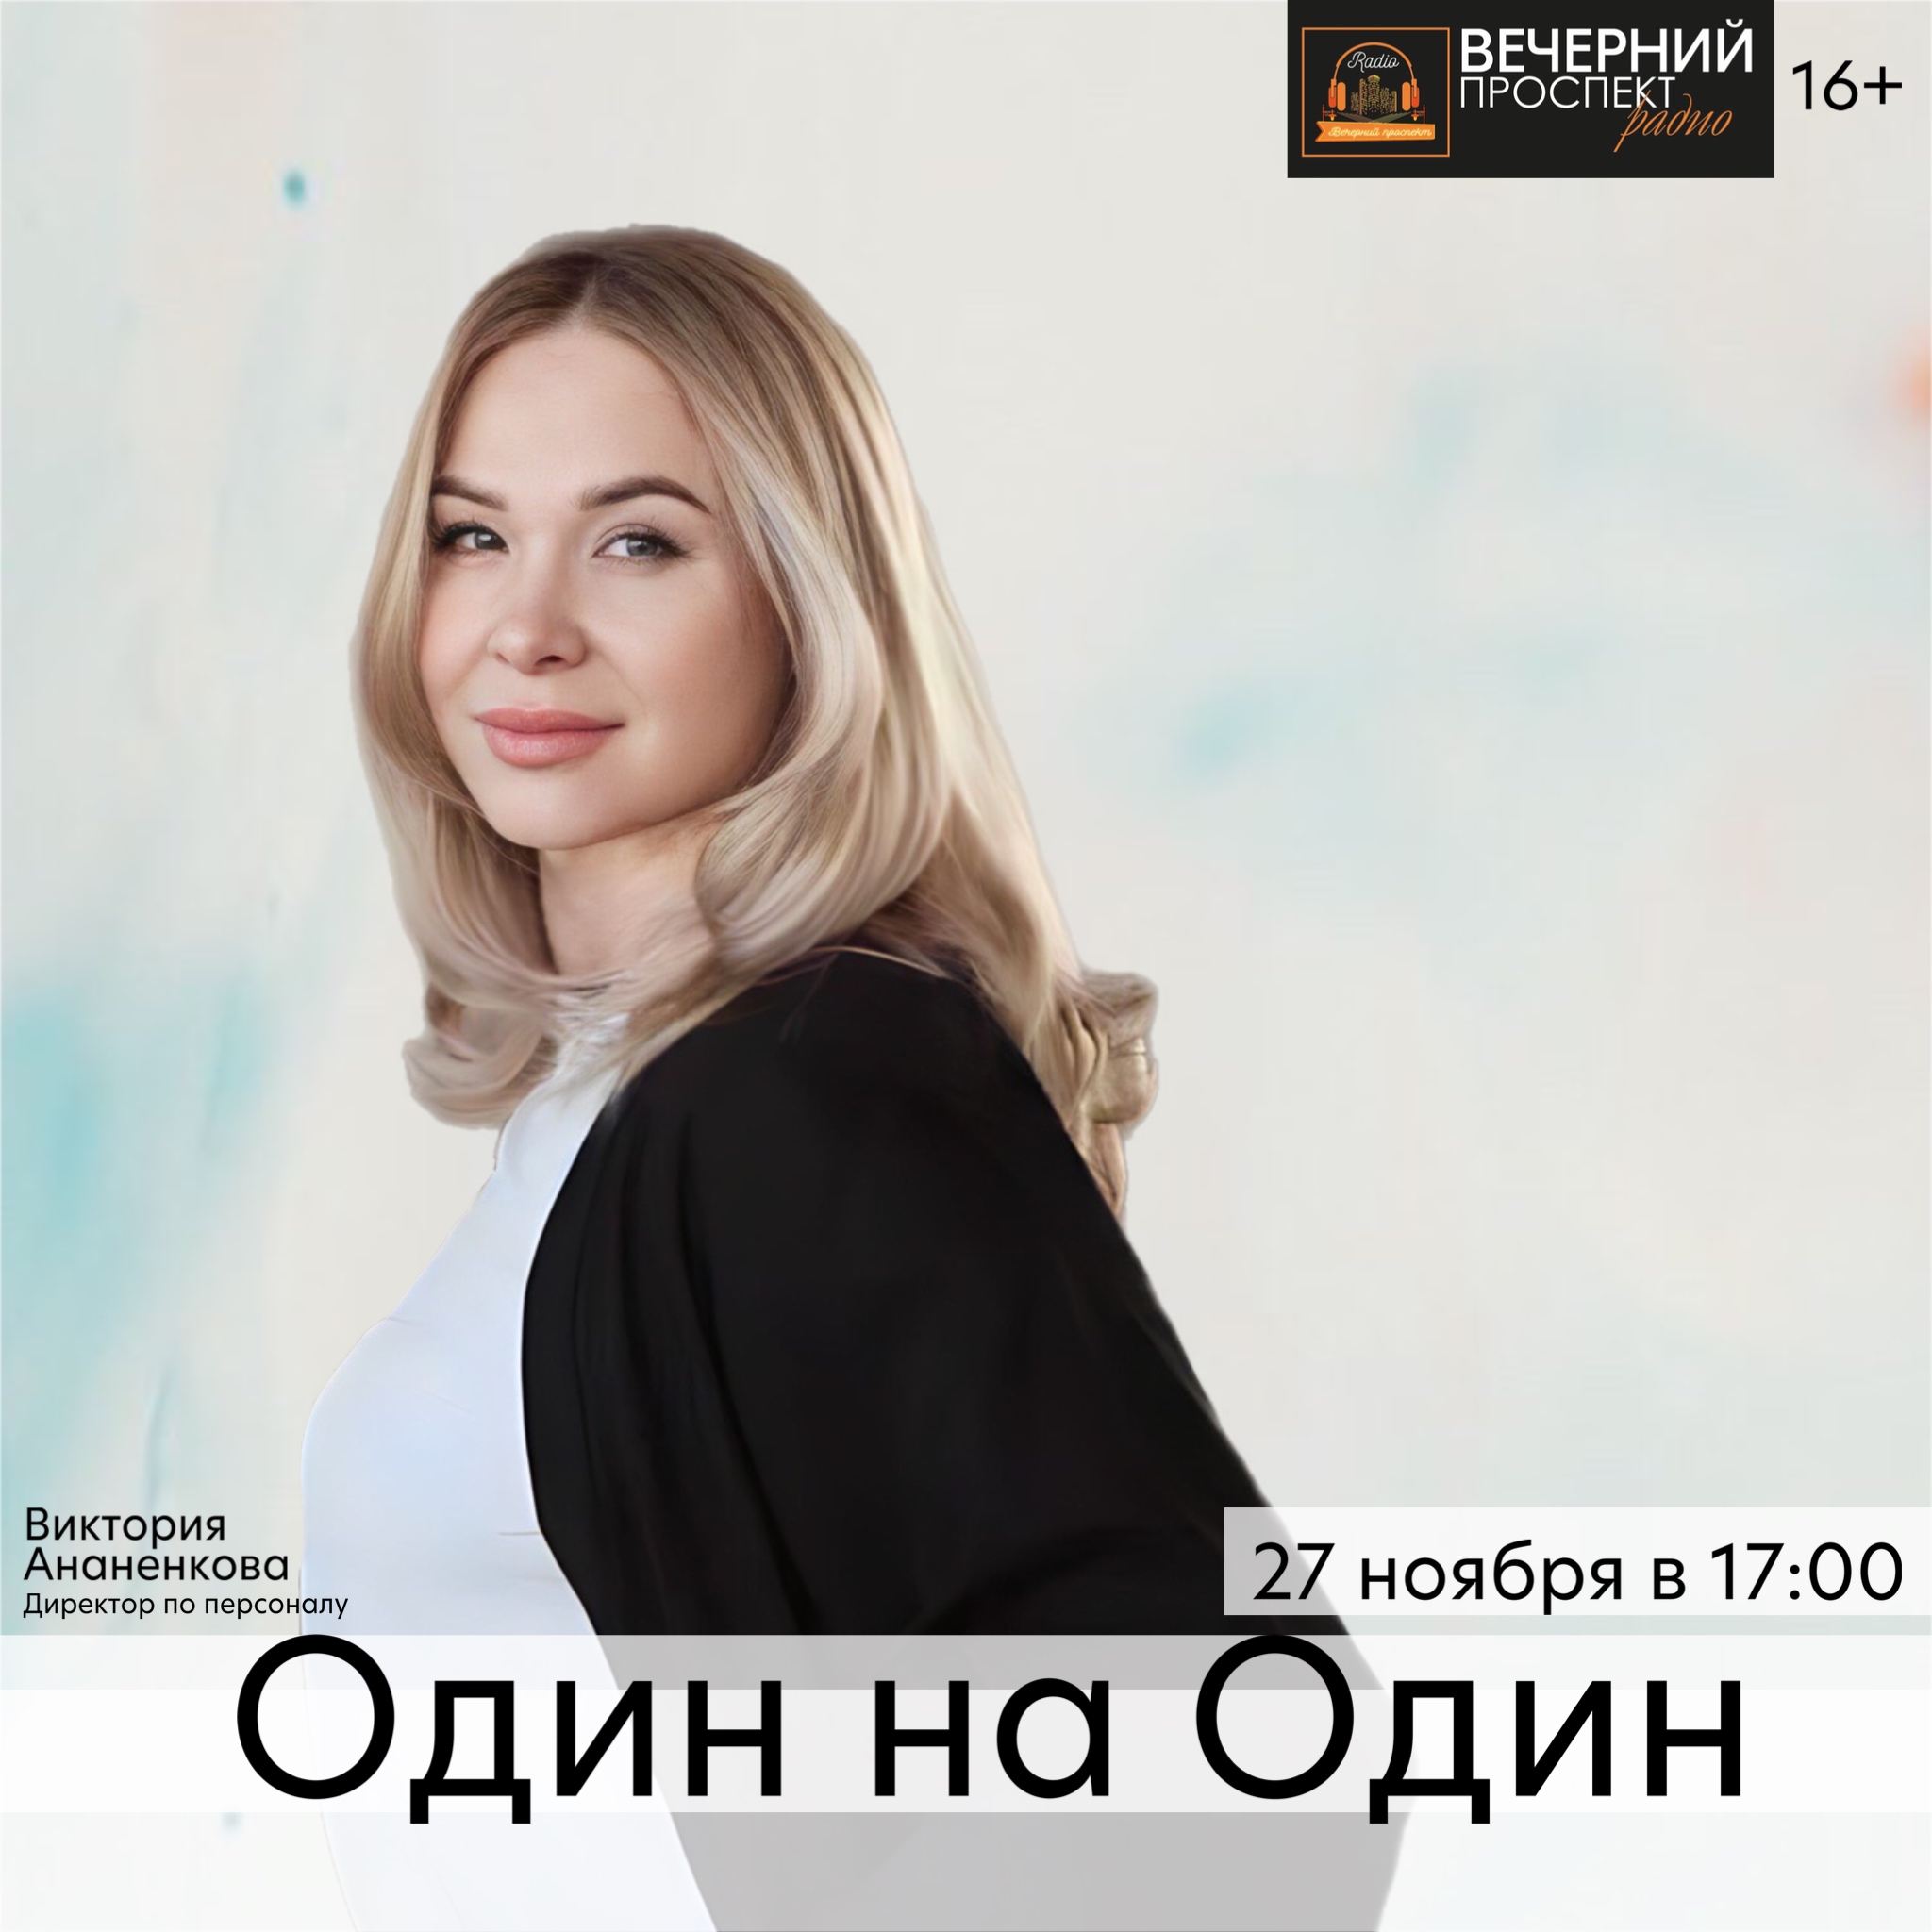 27 ноября с 17:00 до 18:00 в эфире программы «Один на один» директор по персоналу Виктория Ананенкова.